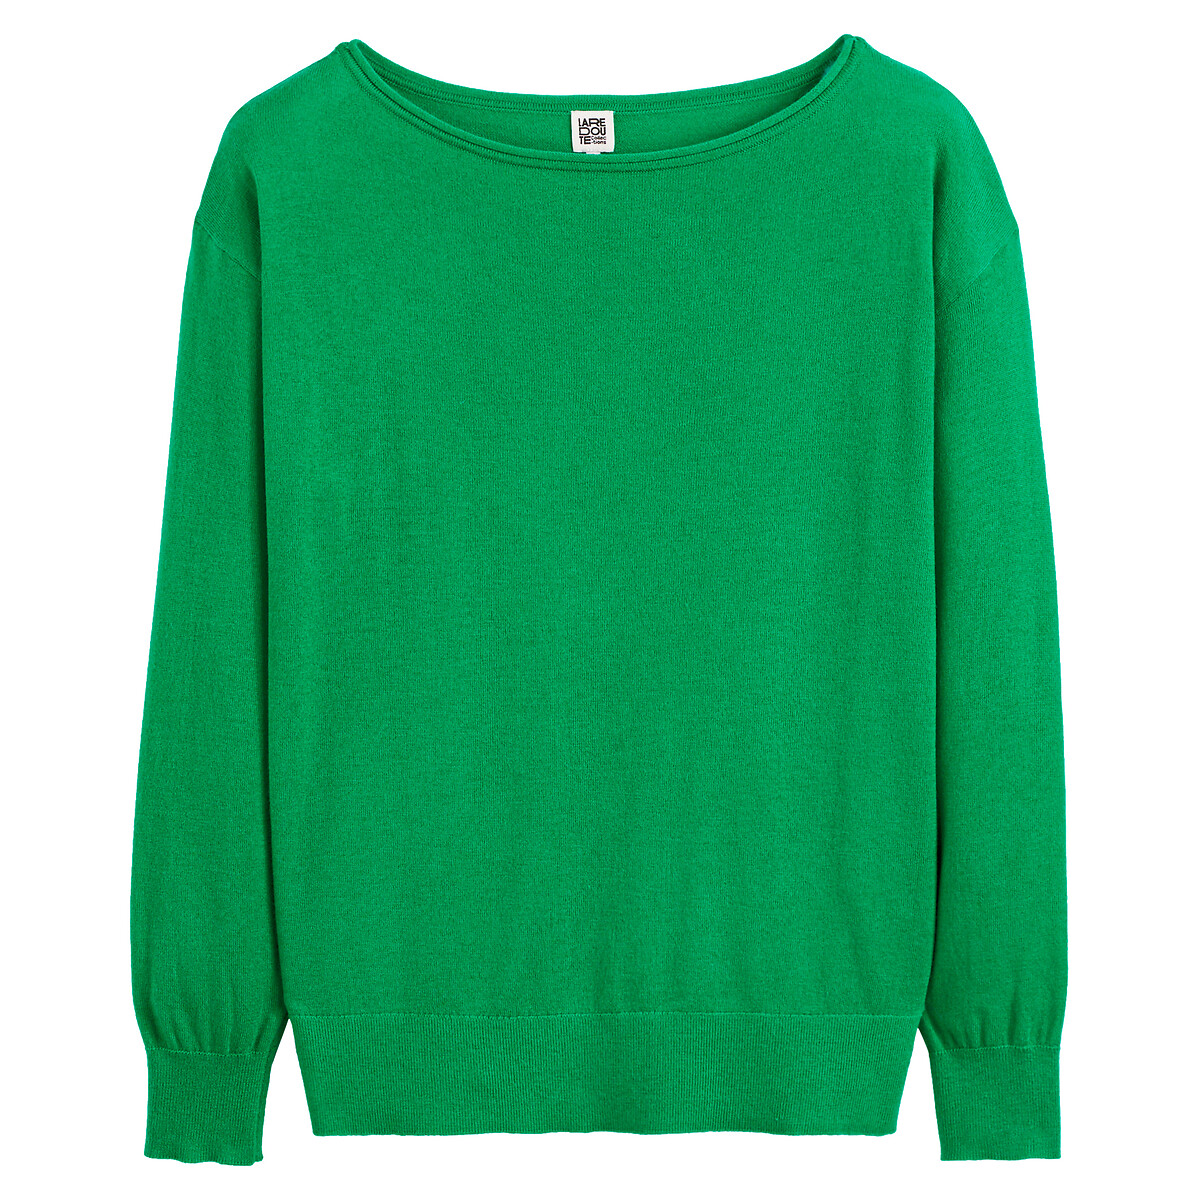 Пуловер с вырезом-лодочкой XL зеленый